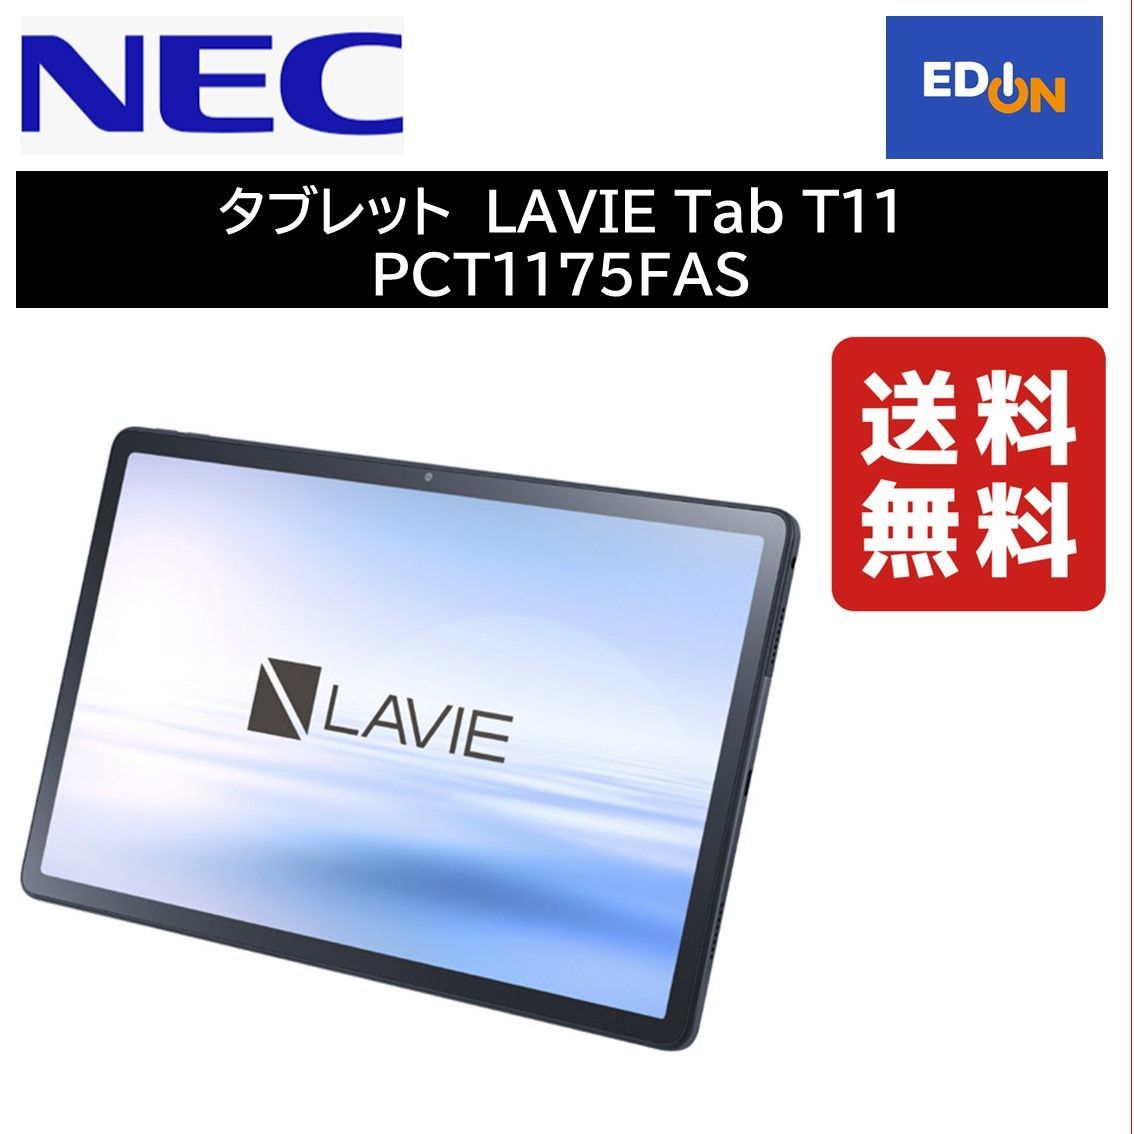 11917】タブレット NEC LAVIE Tab T11 PCT1175FAS - メルカリ